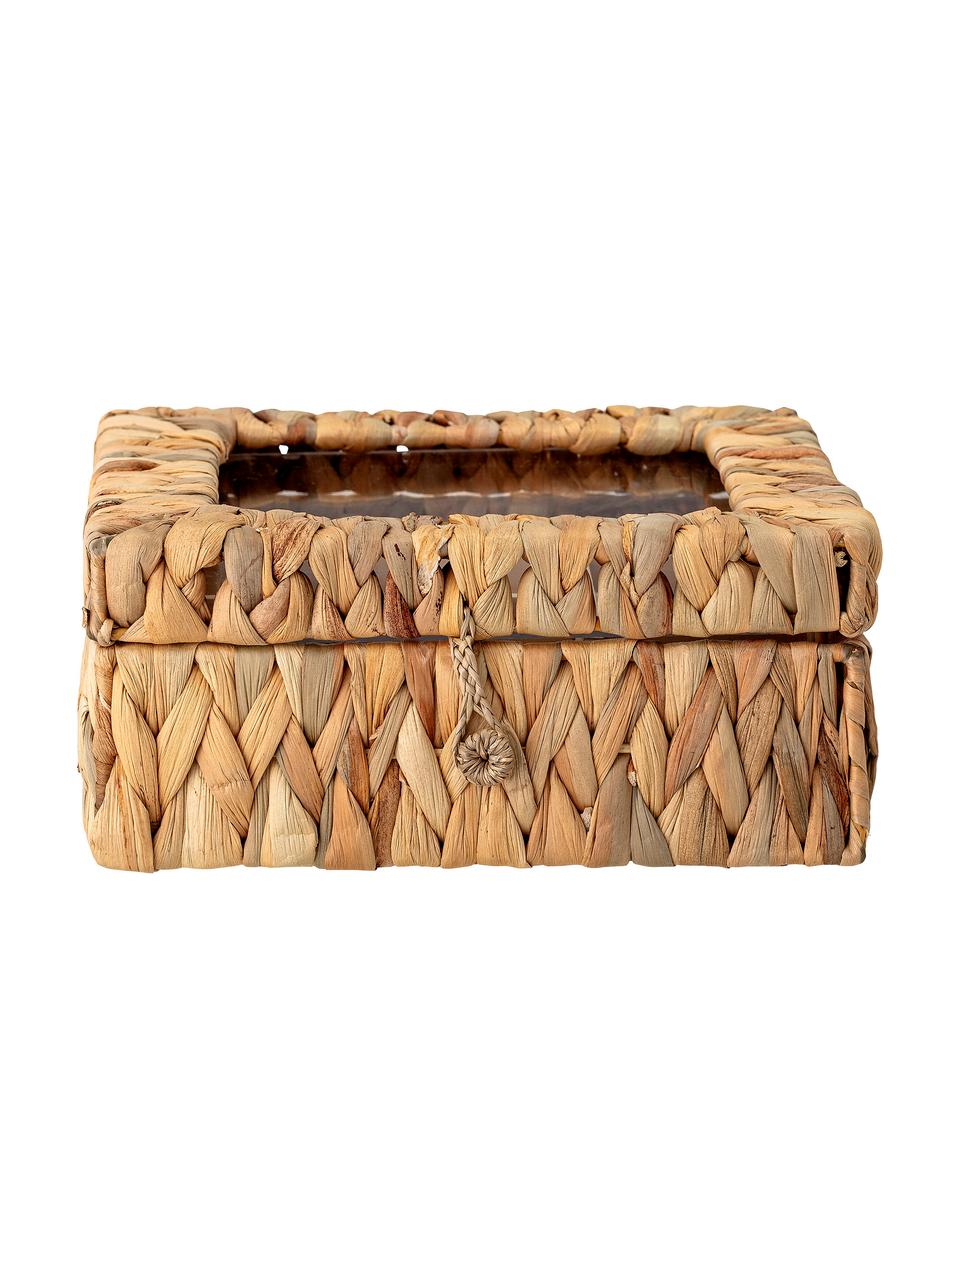 Teebox Iden aus Wasserhyazinthe, Box: Wasserhyazinthe, Braun, B 23 x H 10 cm